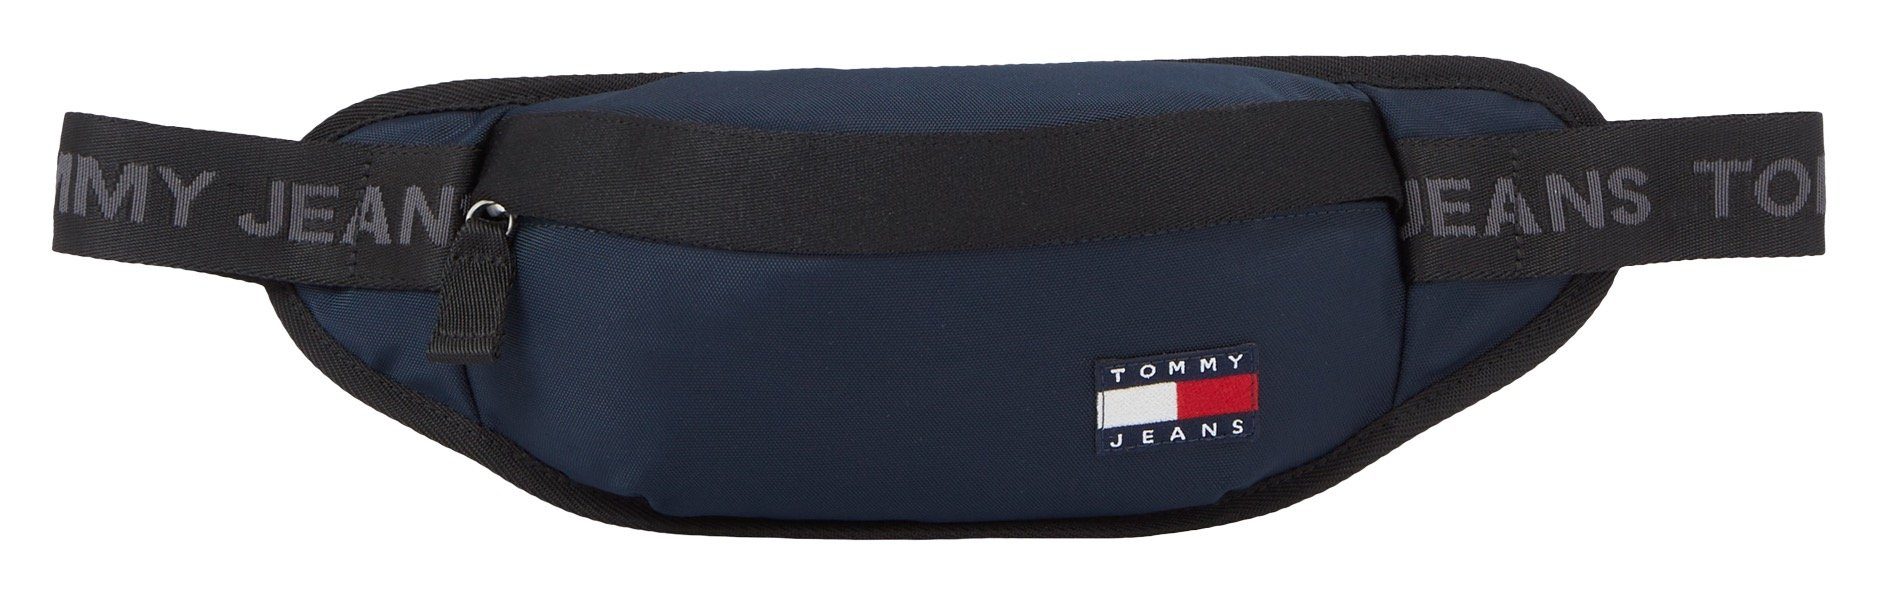 Tommy Jeans Bauchtasche TJM DAILY modischen Design BUM BAG, im